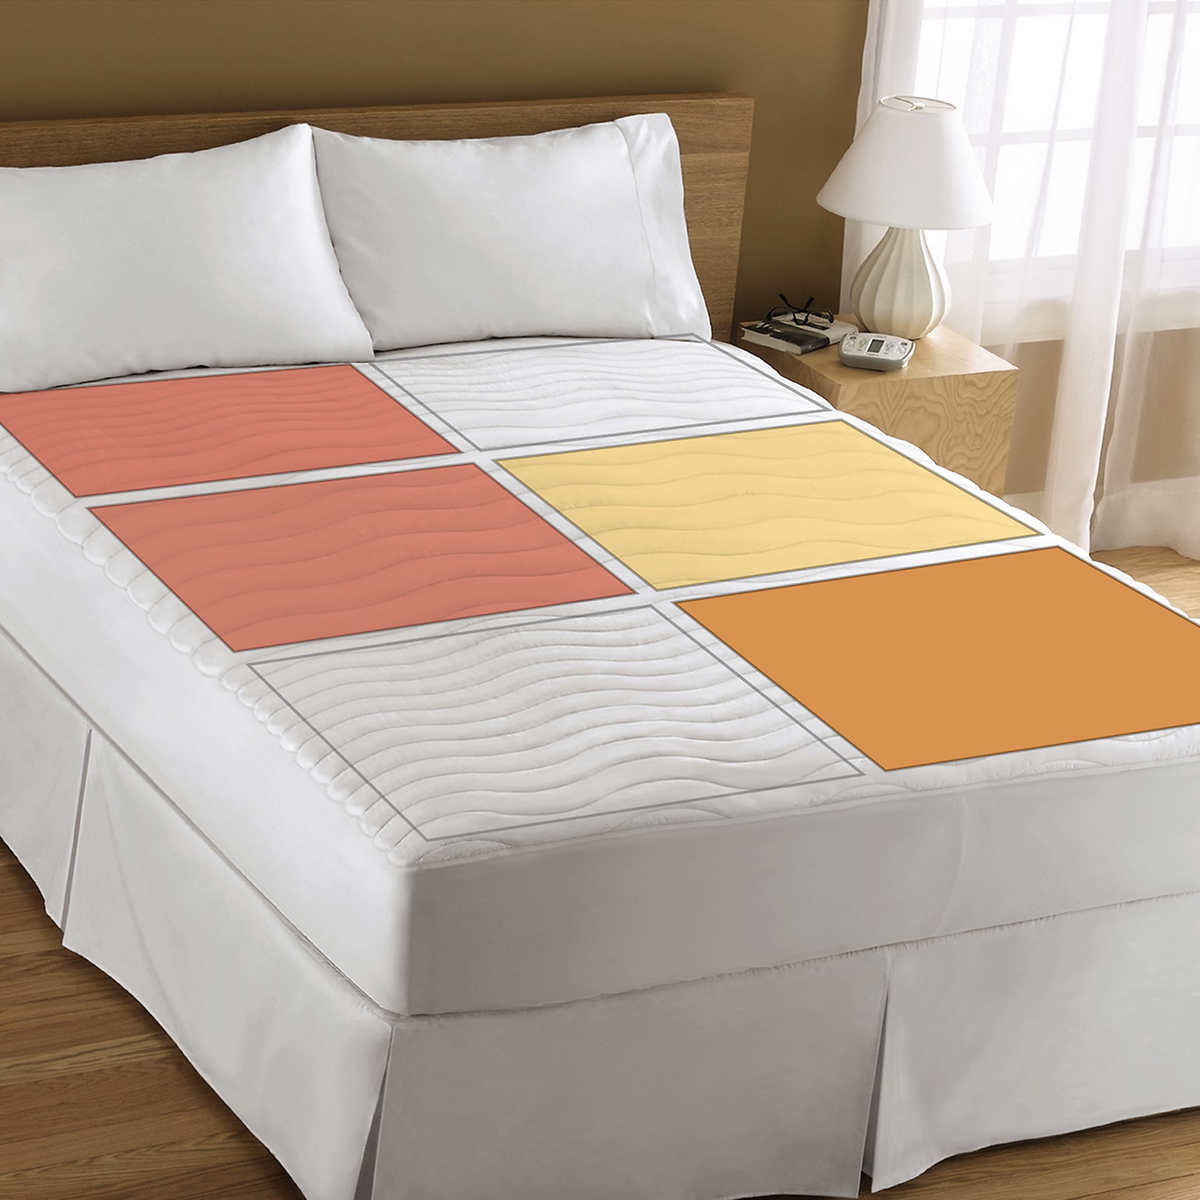 heated mattress pad full